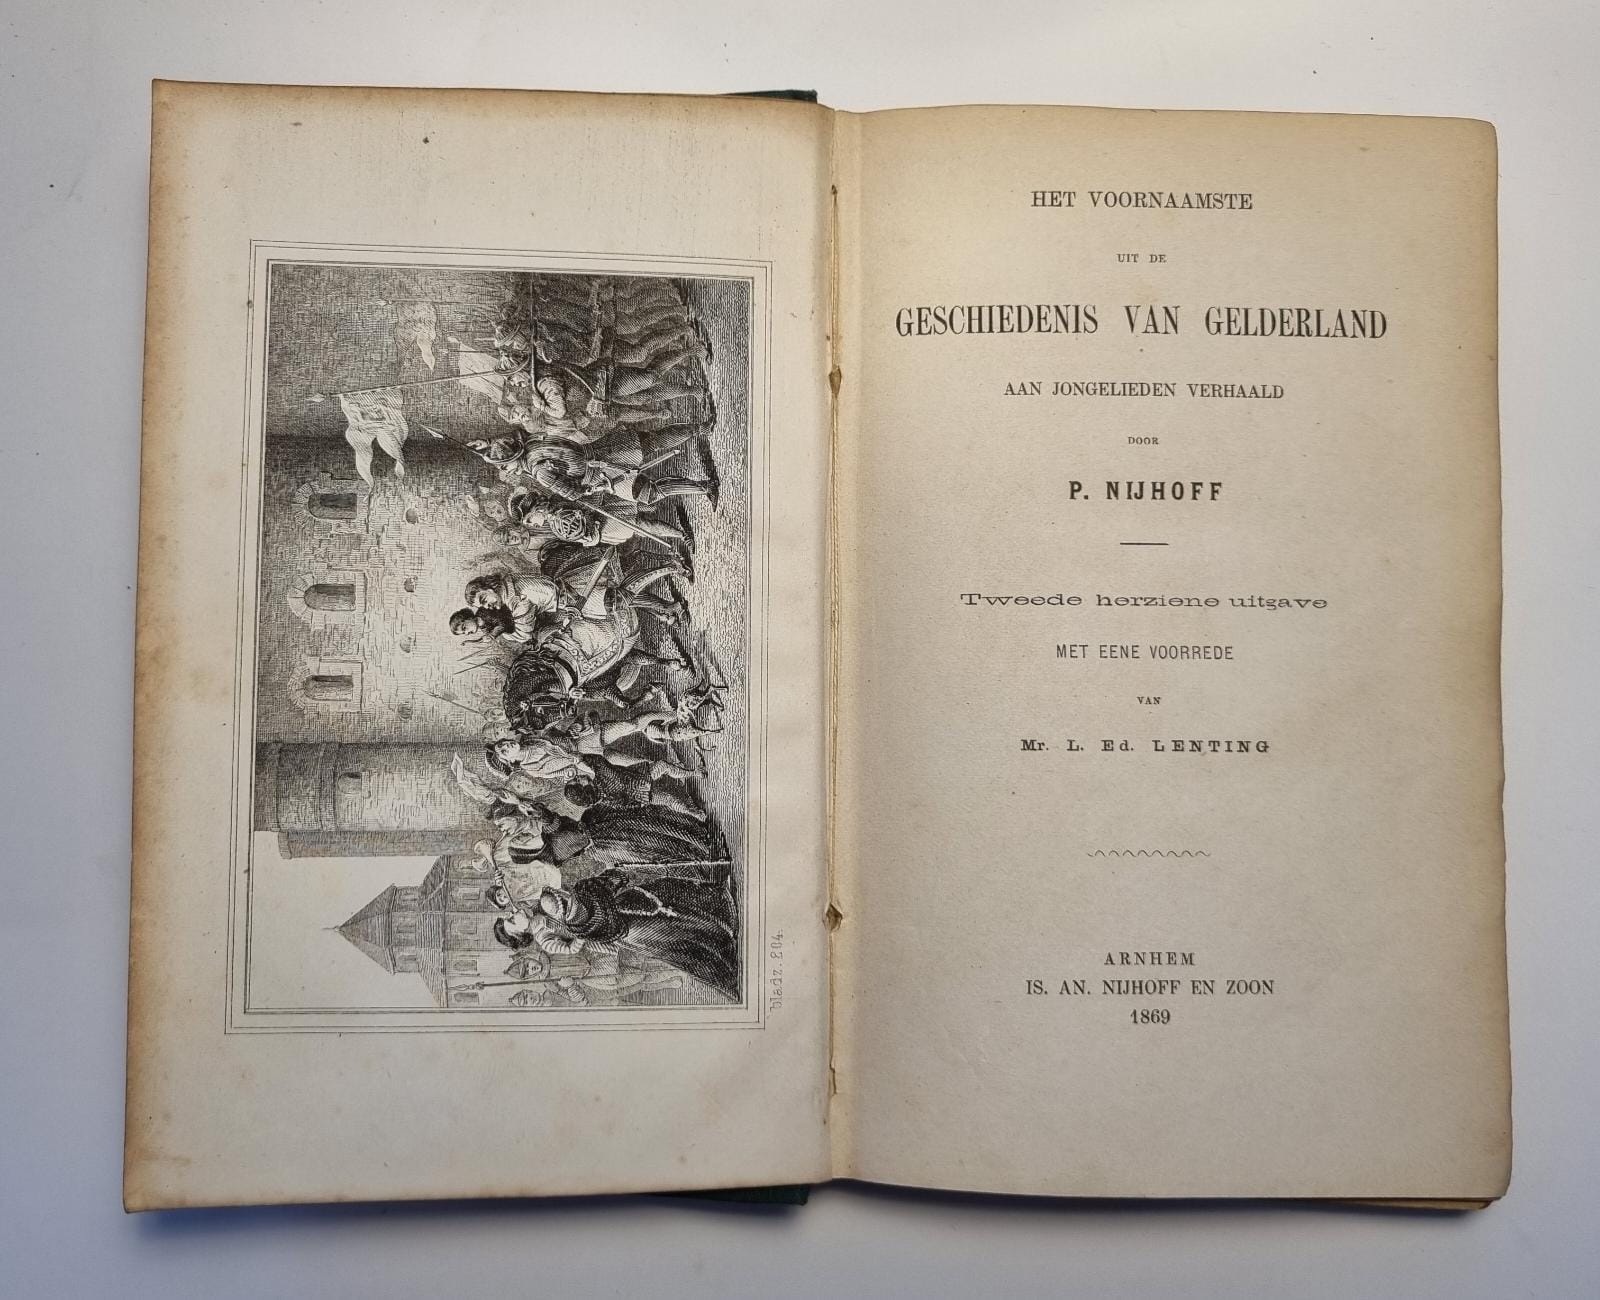 Het voornaamste uit de geschiedenis van Gelderland aan jonge lieden verhaald, Arnhem,1869. [2e ed.]